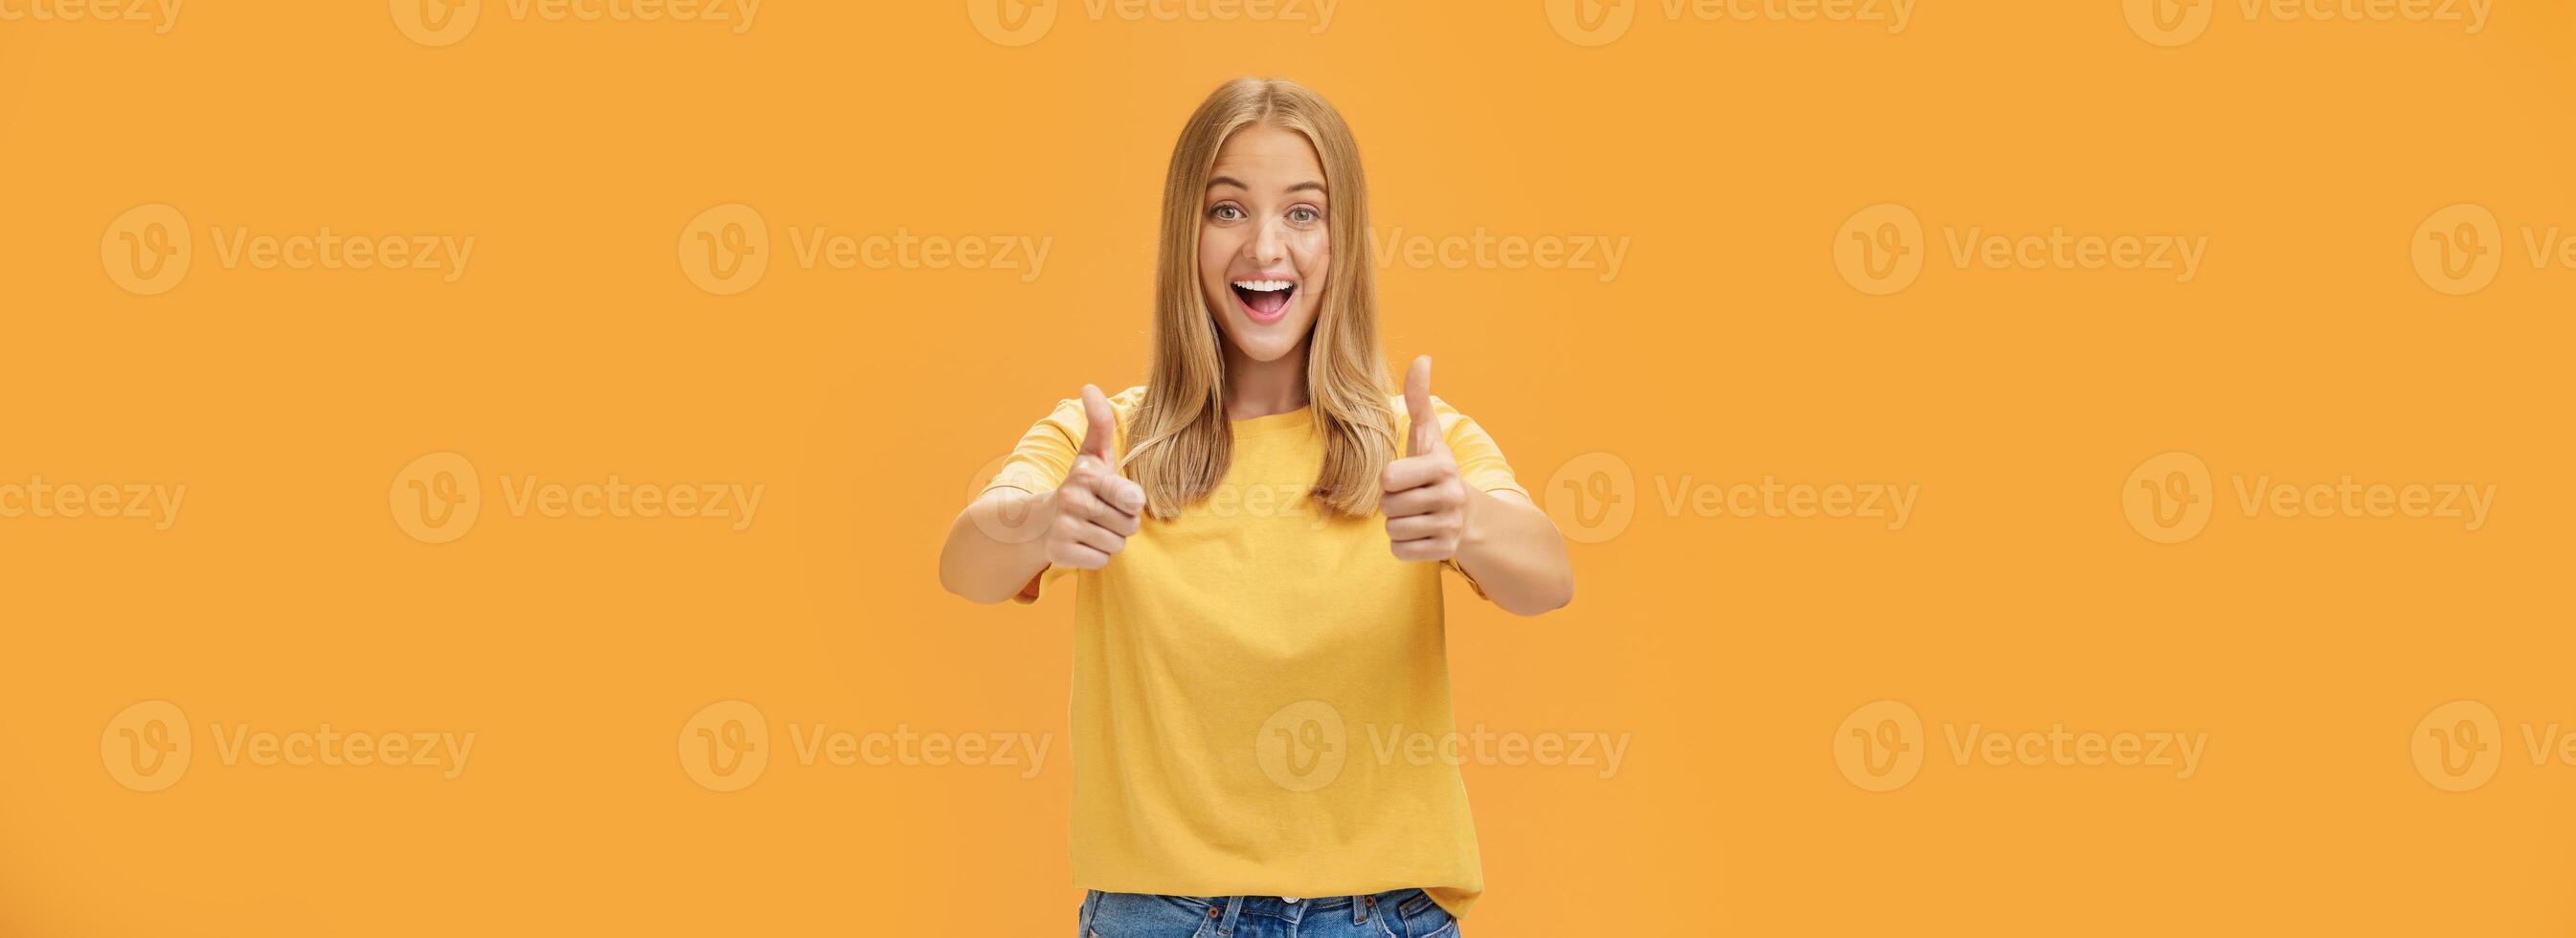 kvinna stöder med Uppfostrad tummen upp och roade glad leende som visar positiv attityd uttrycker tycka om på begrepp eller aning ger godkännande Framställ Lycklig och förtjust mot orange bakgrund foto